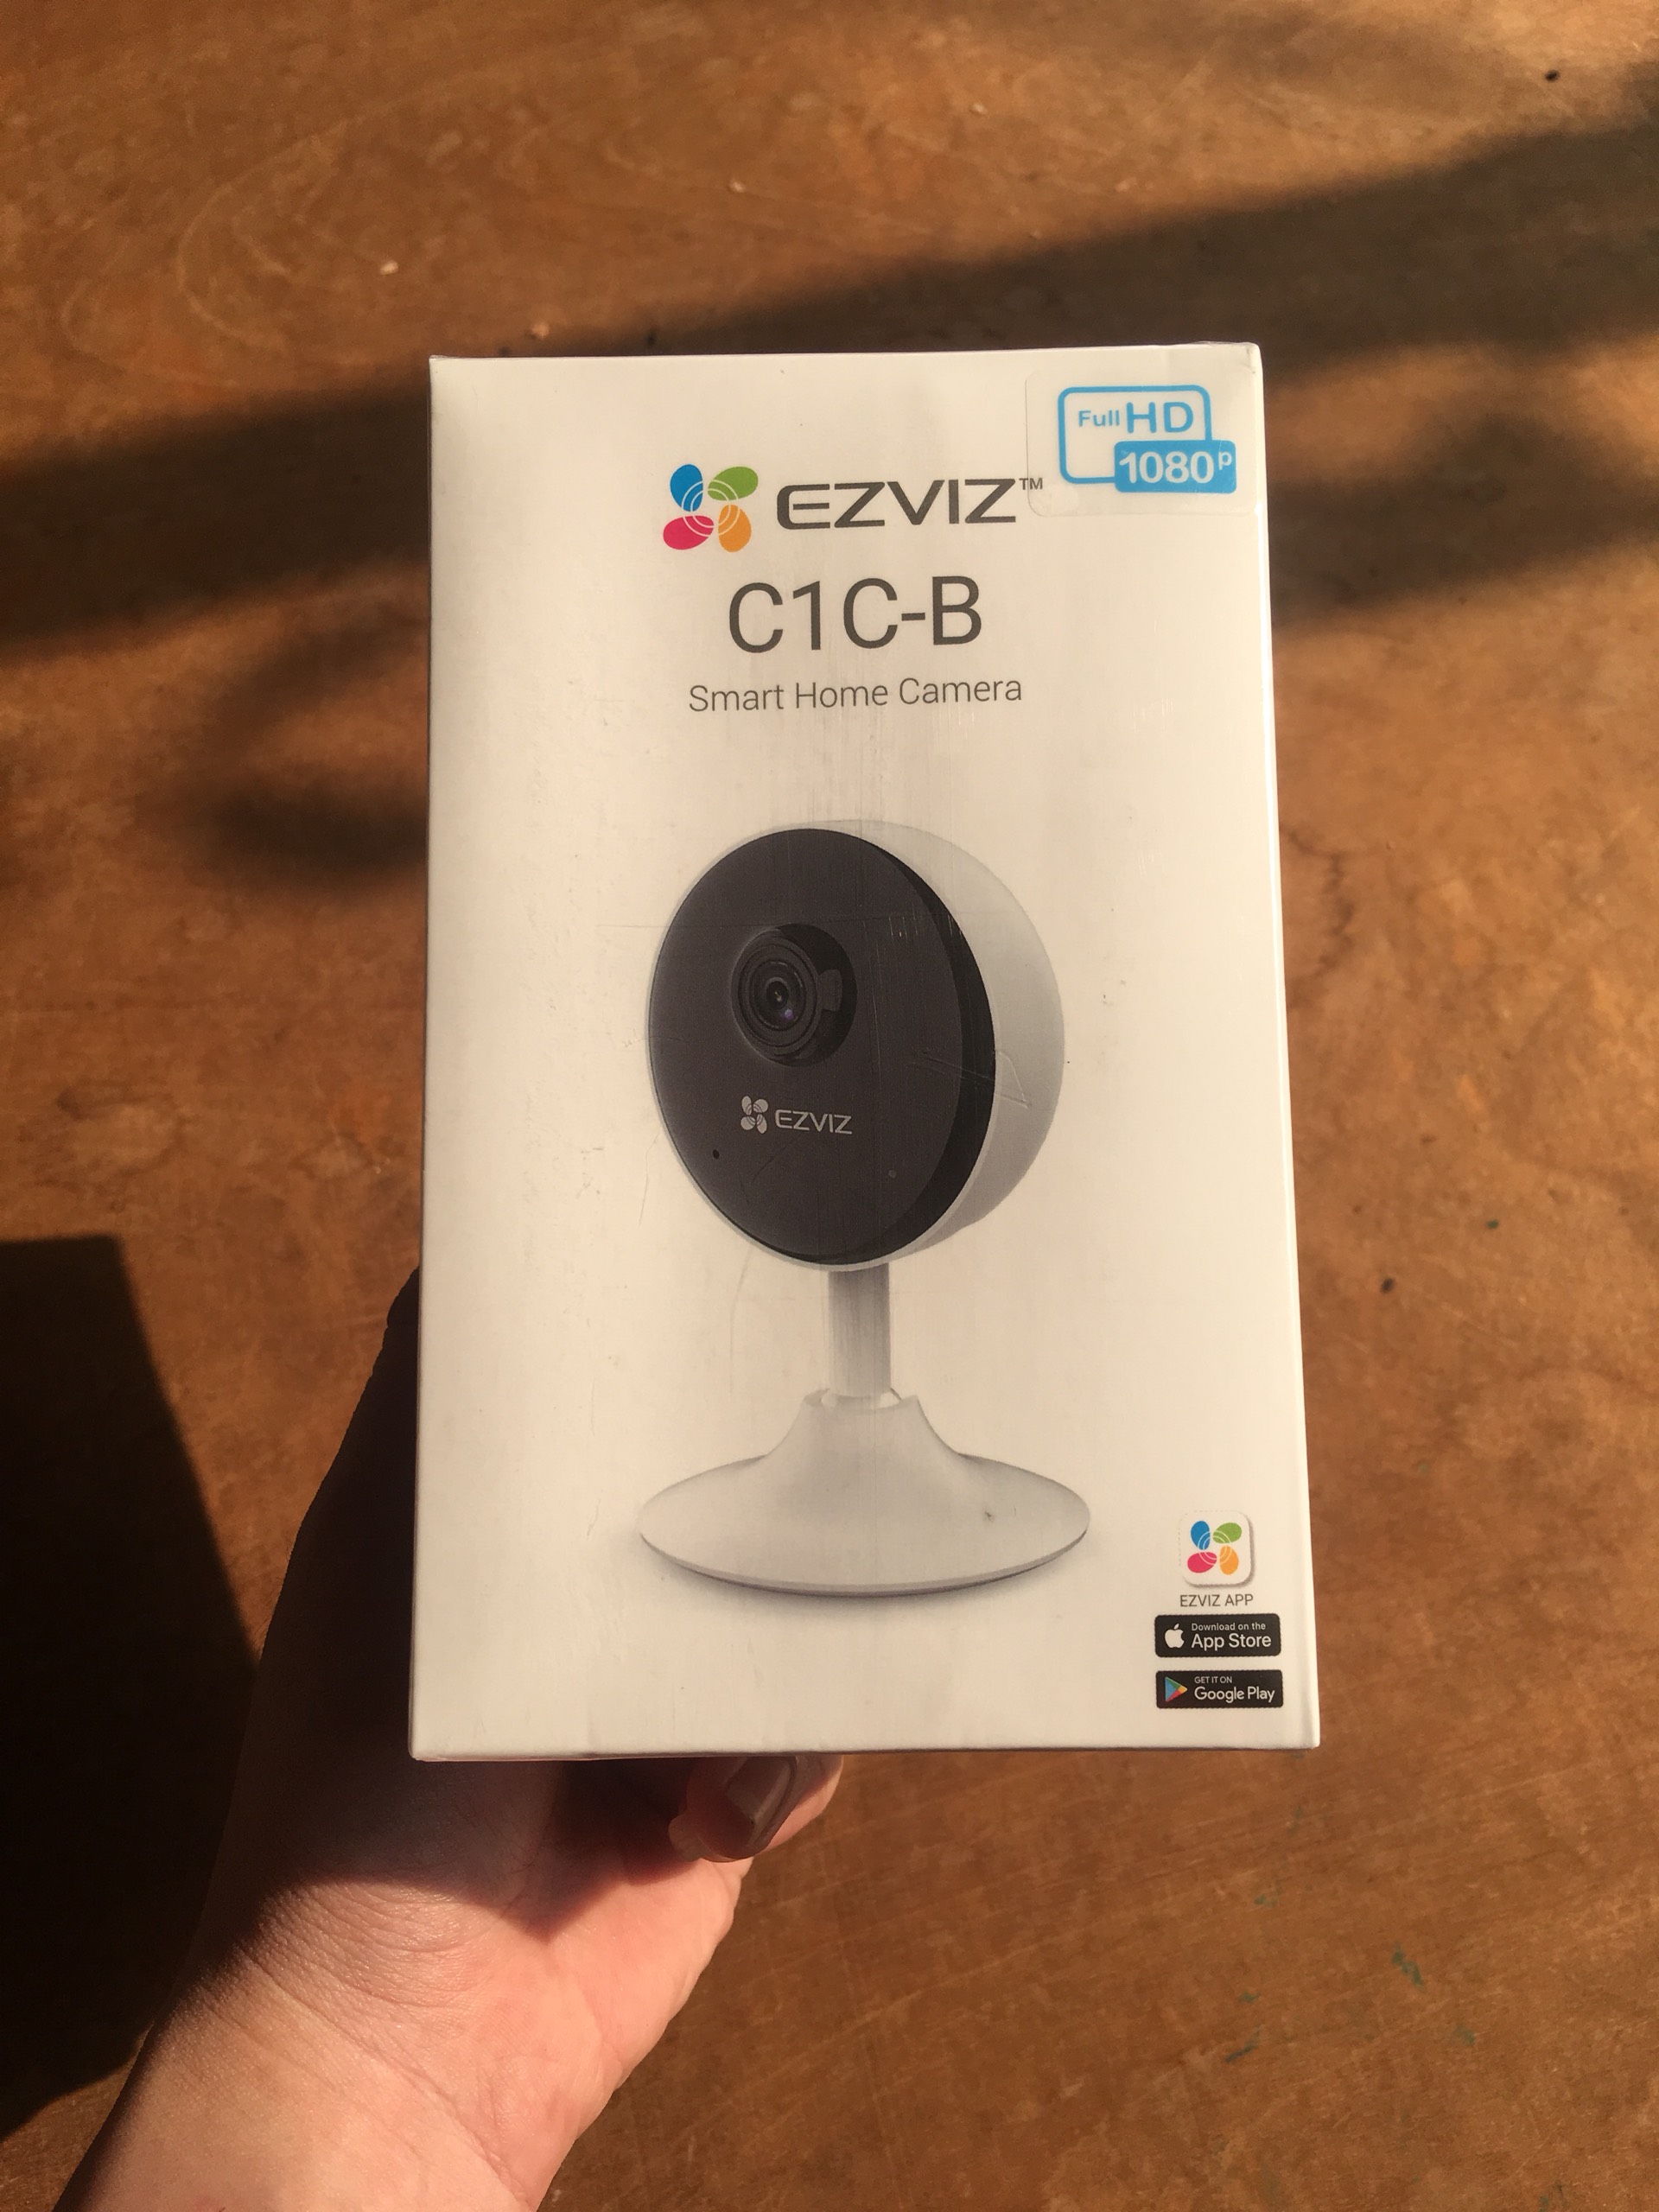 Camera wifi Ezviz mini CS-C1C-B Full HD 1080P Chính hãng chuẩn nén H265 mới , Đàm Thoại 2 Chiều Tích Hợp Chế Độ Nhà Thông Minh - Hàng Chính Hãng